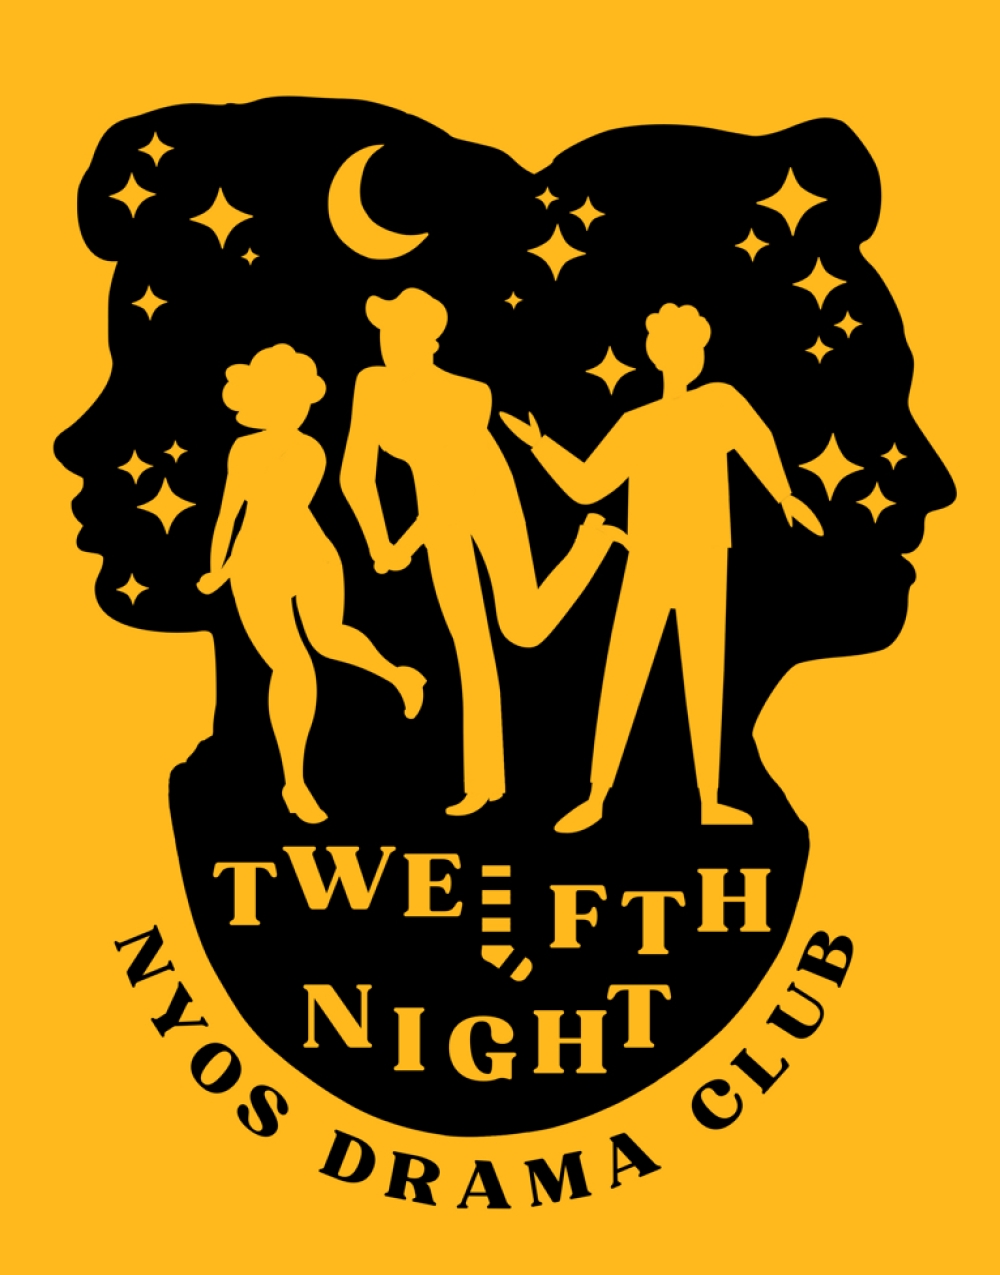 Twelfth Night - NYOS Charter School Drama Club Stage Mag